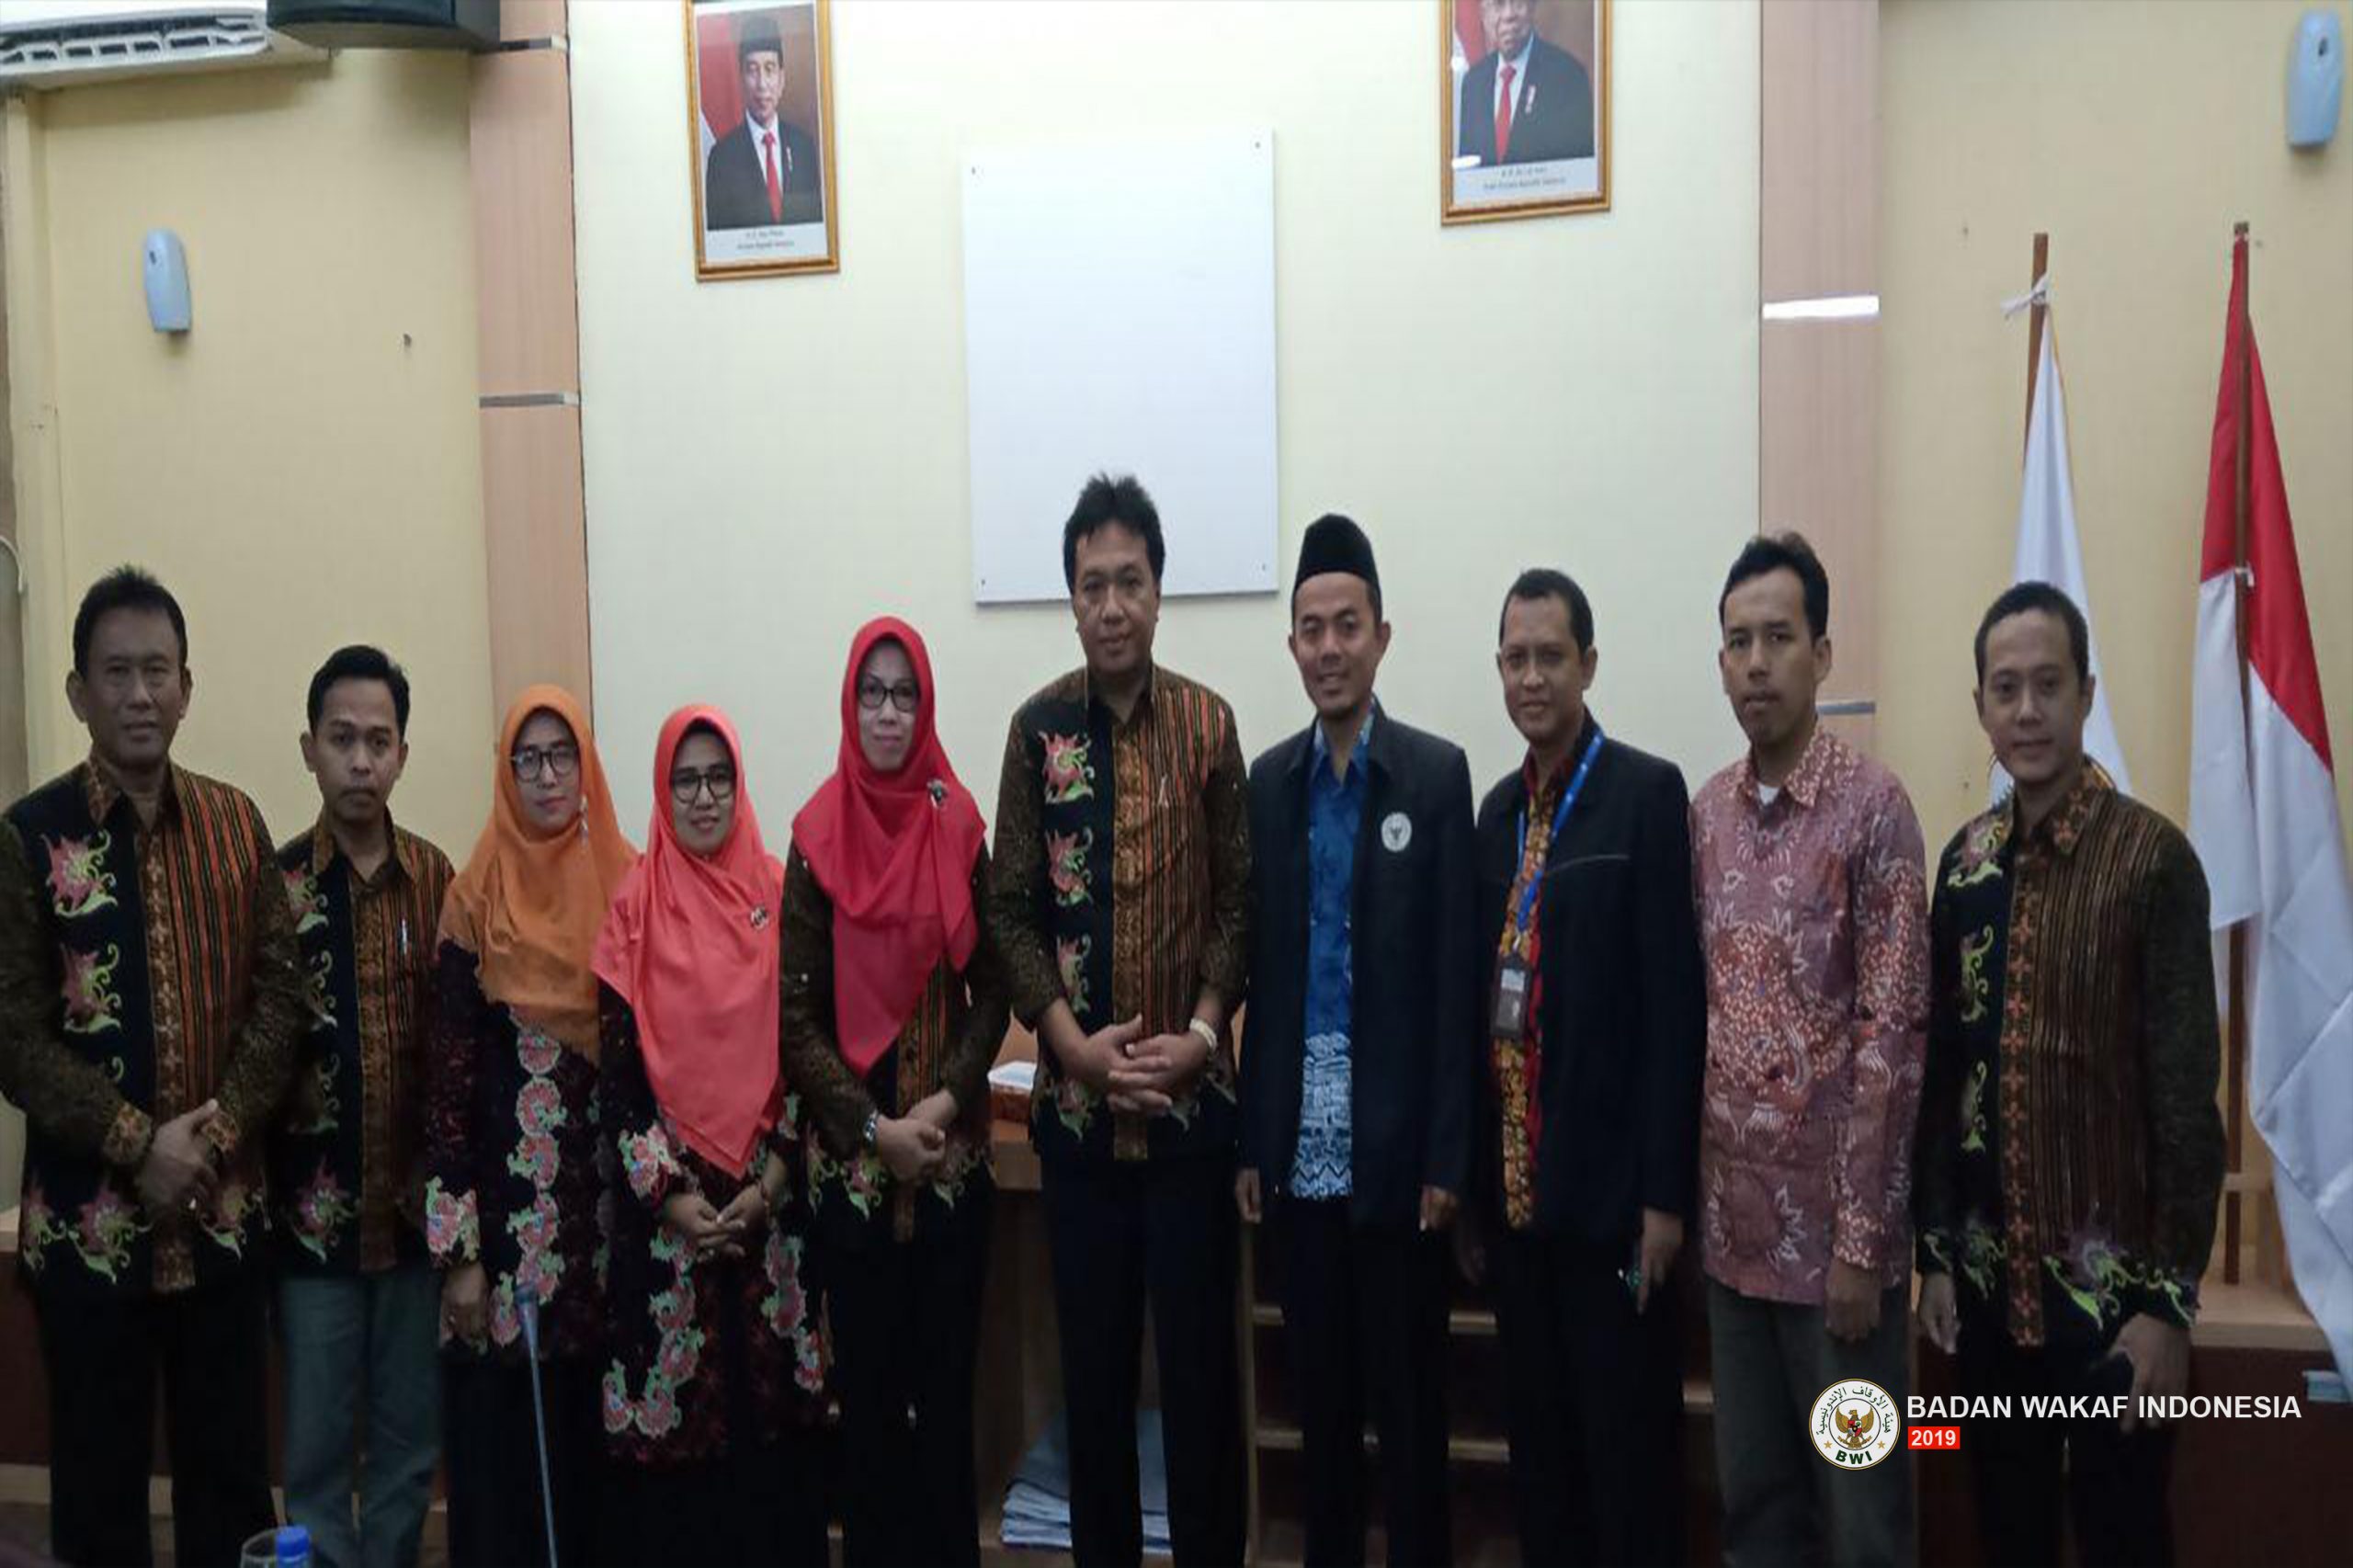 Badan wakaf Indonesia Terima Kunjungan Perwakilan Pengurus Kabupaten Jepara